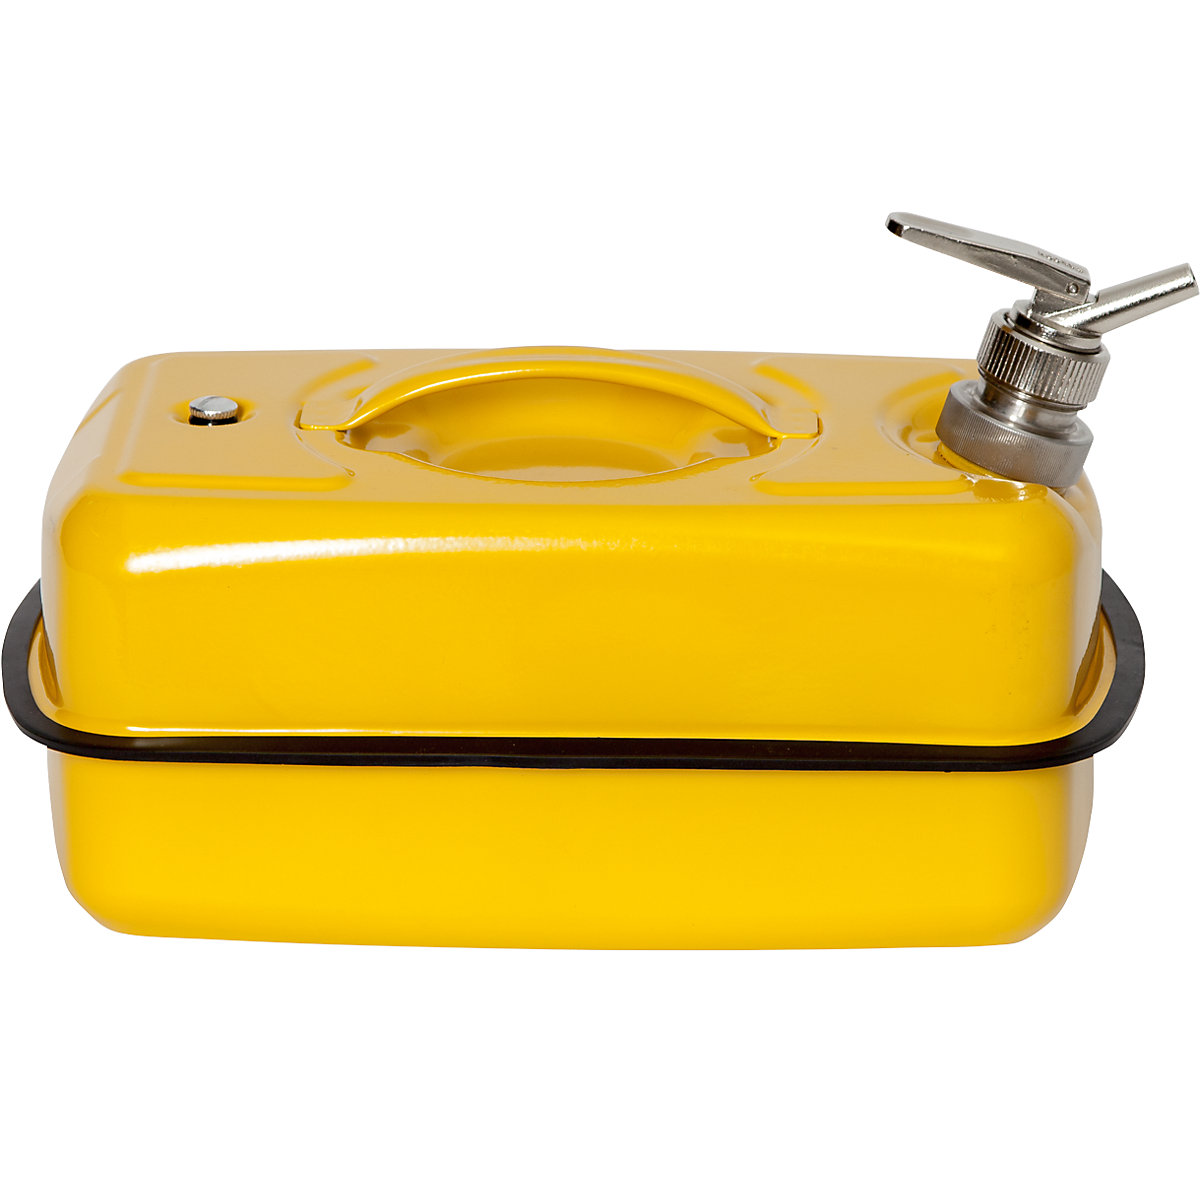 FALCON – Canistră de siguranță plată cu robinet pentru dozare fină (Imagine produs 6)